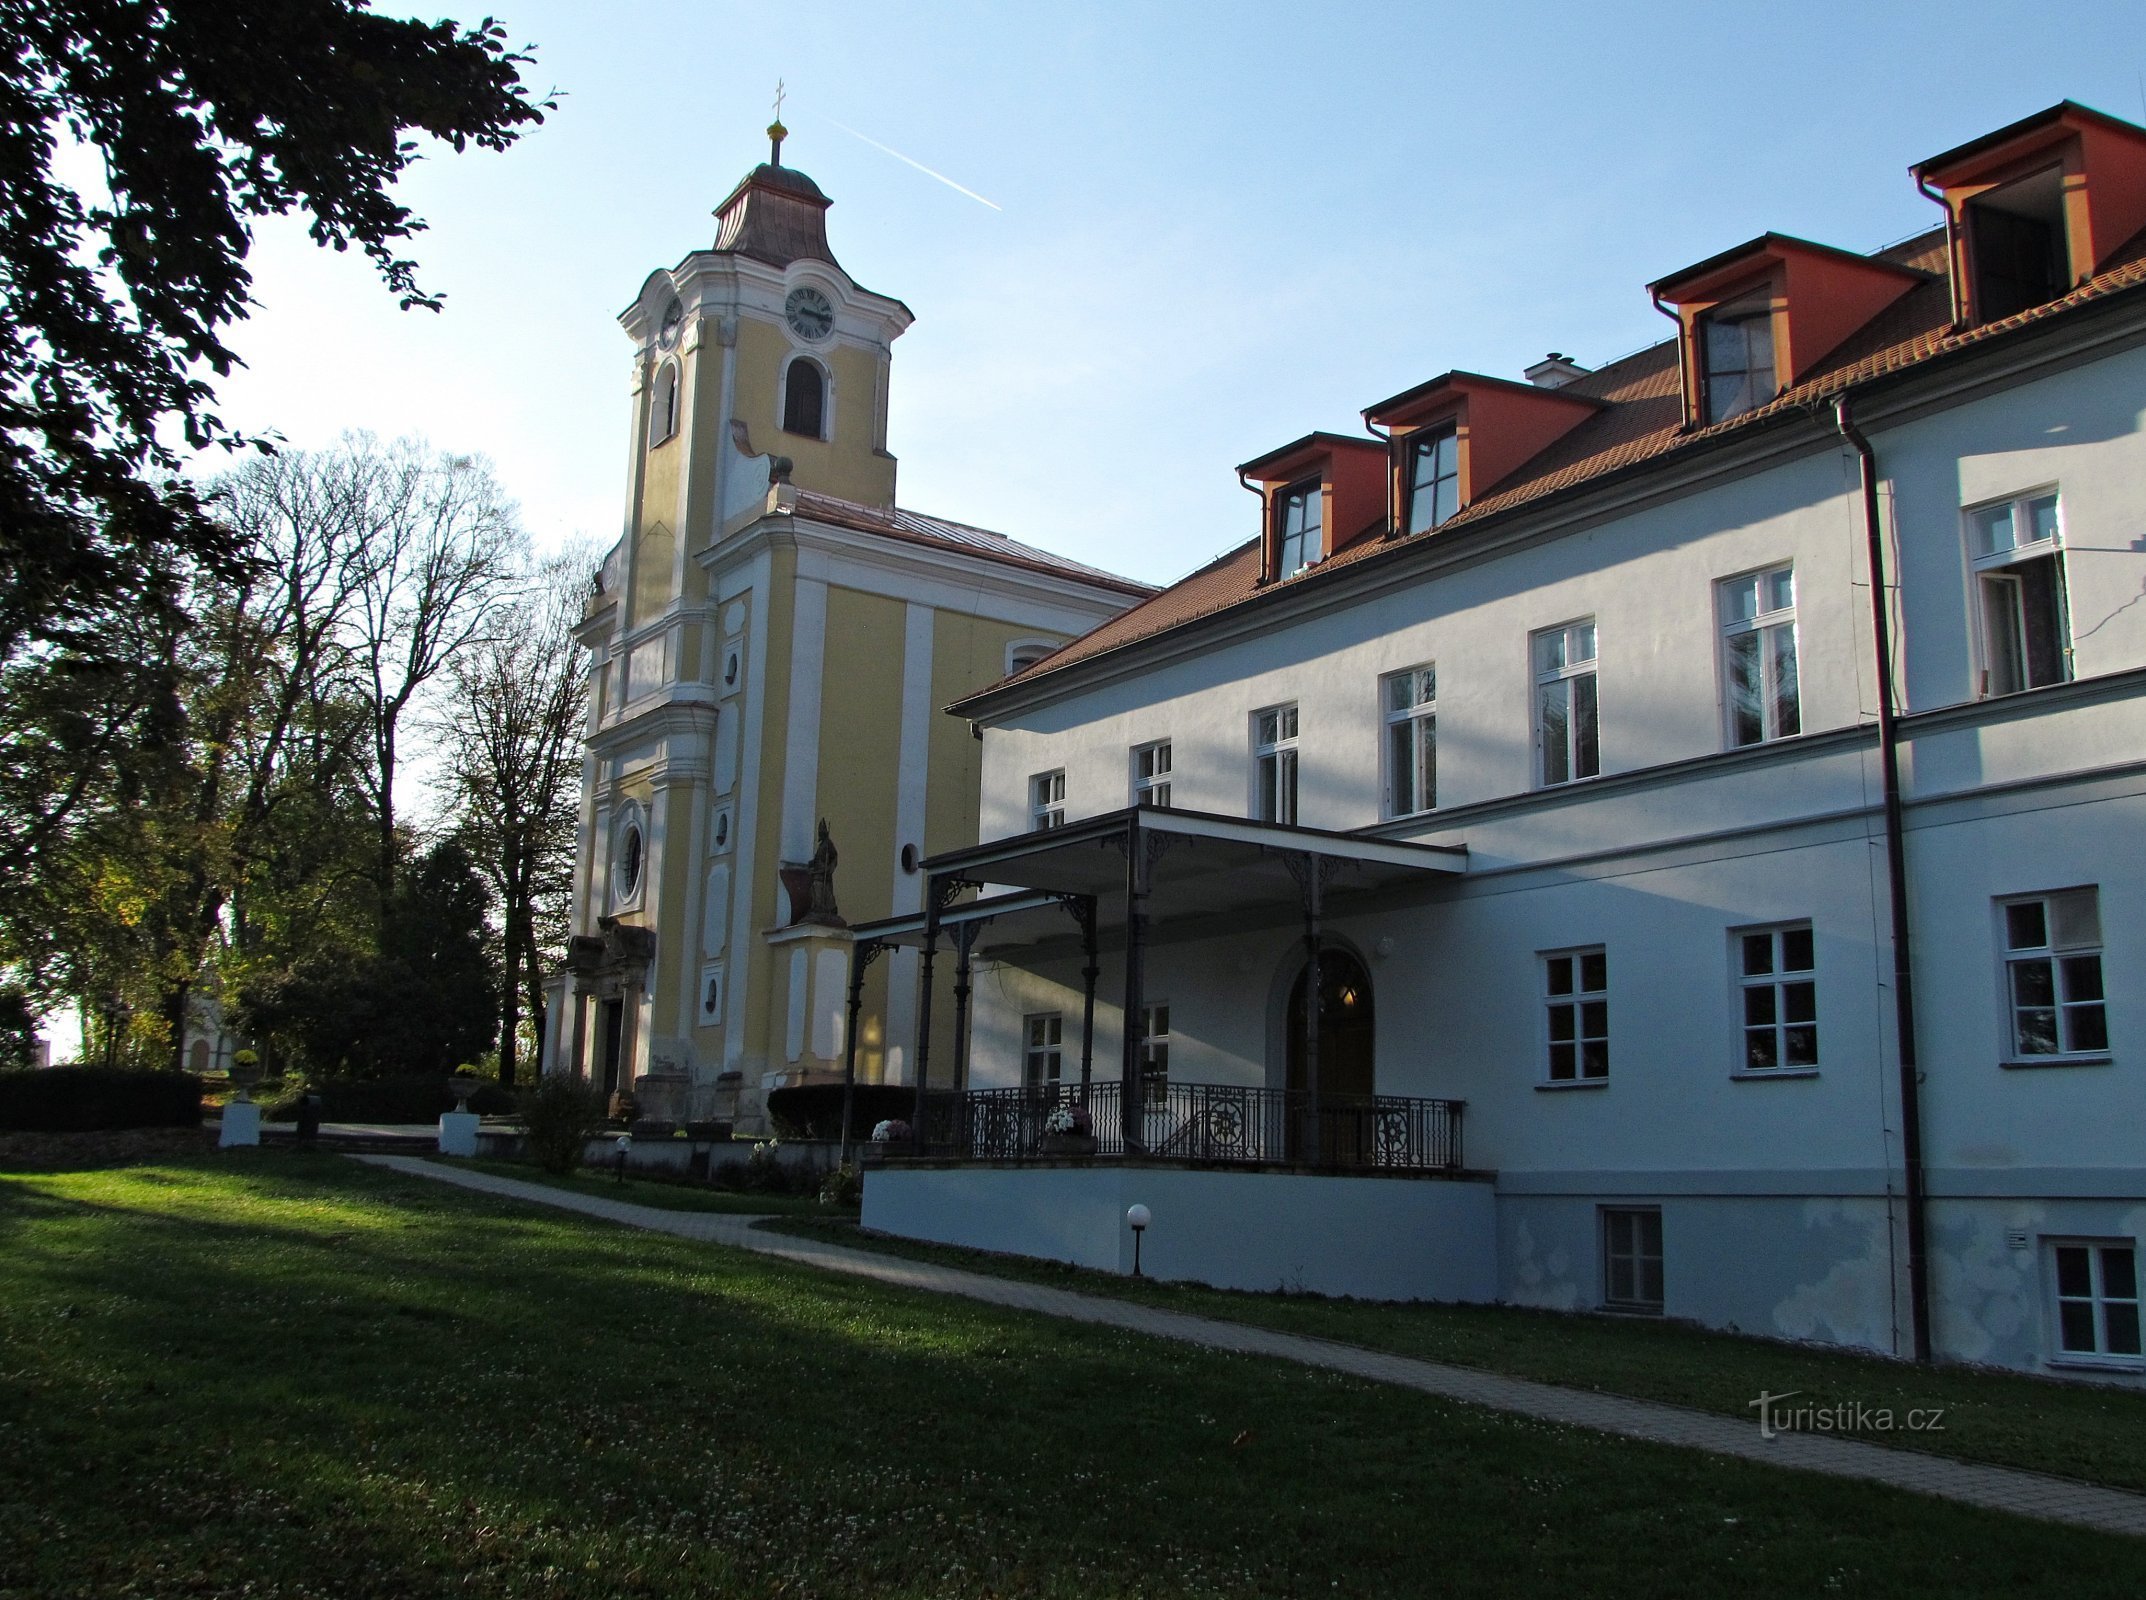 Från Komárov till attraktionerna i Pohořice, de nära Zlín